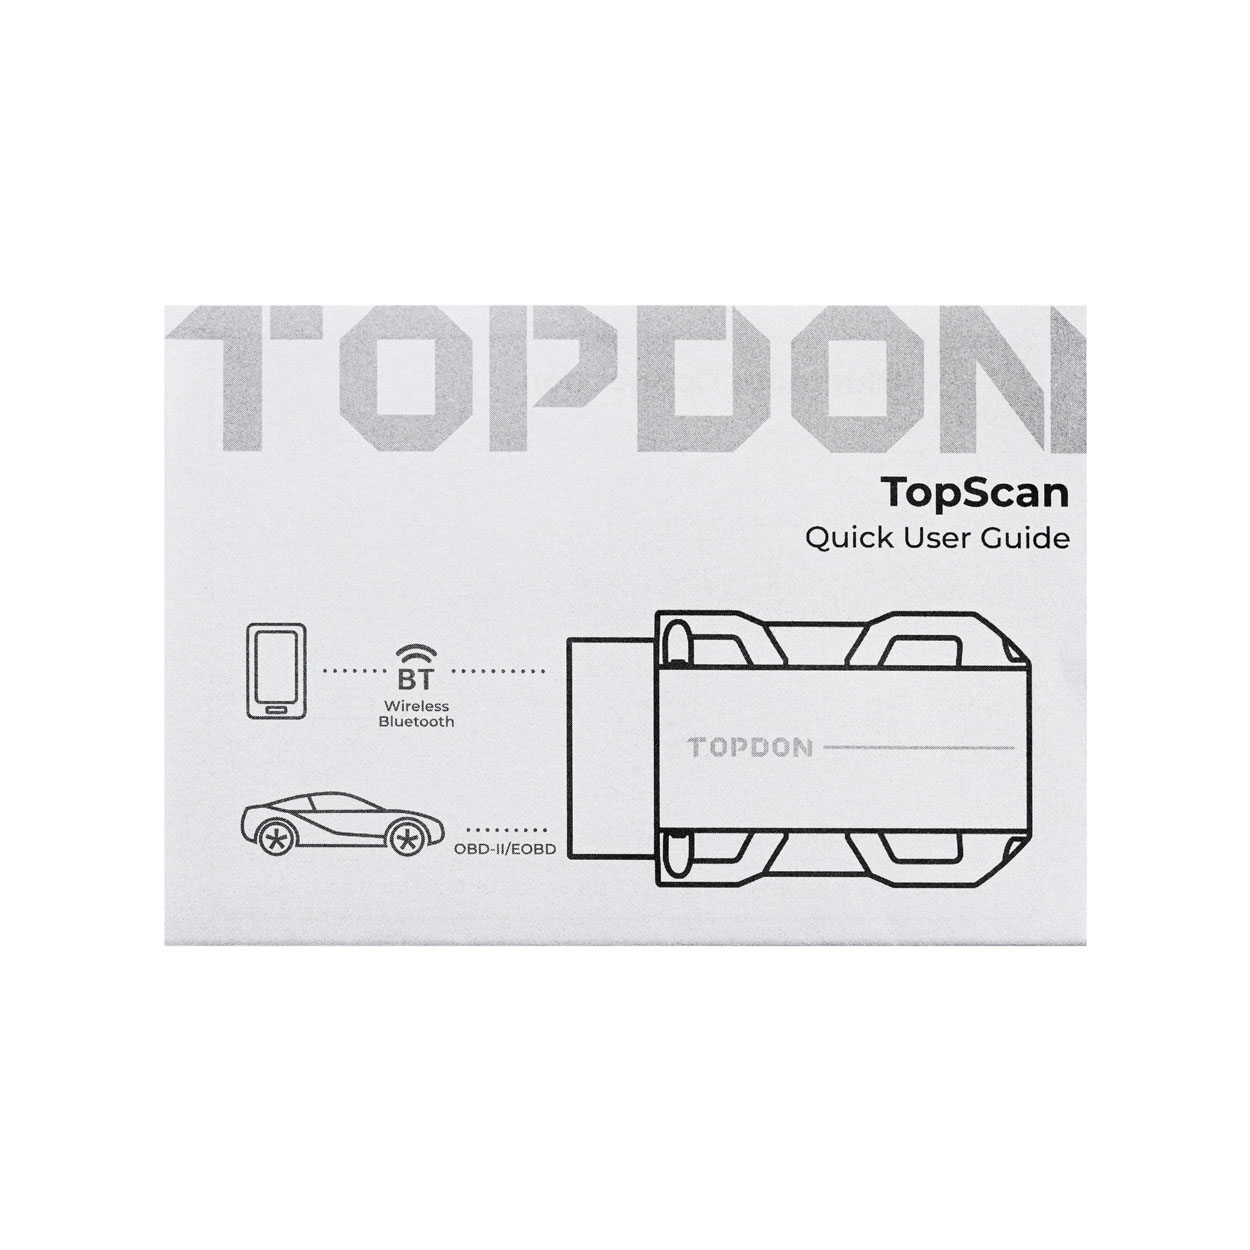 TESTER DIAGNOSTYCZNY TOPDON TOPSCAN DONGLE TOPSCAN za 804,12 zł z